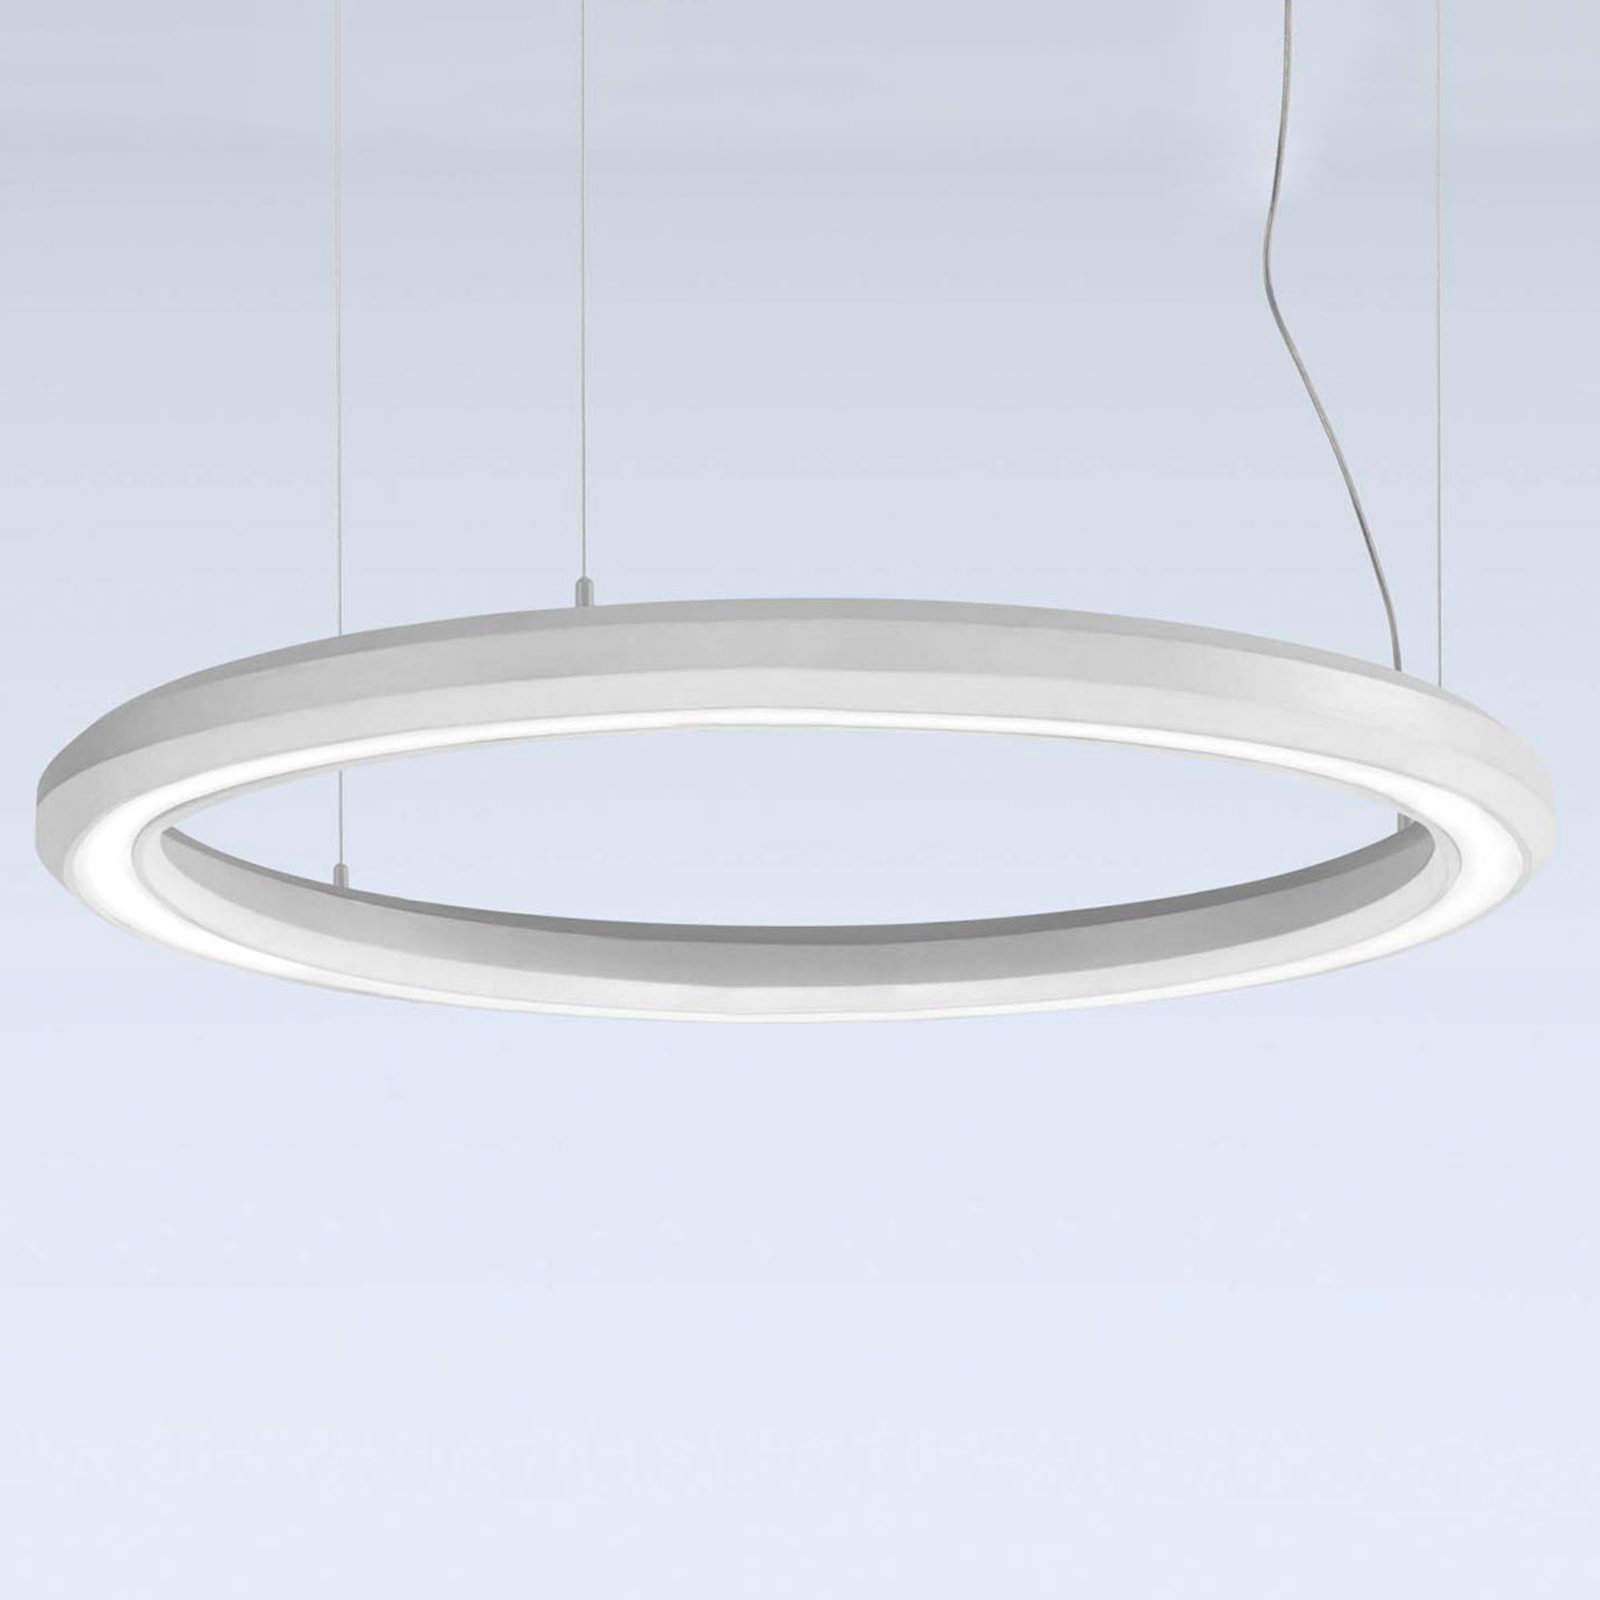 LED-pendellampa Materica botten Ø 90 cm vit